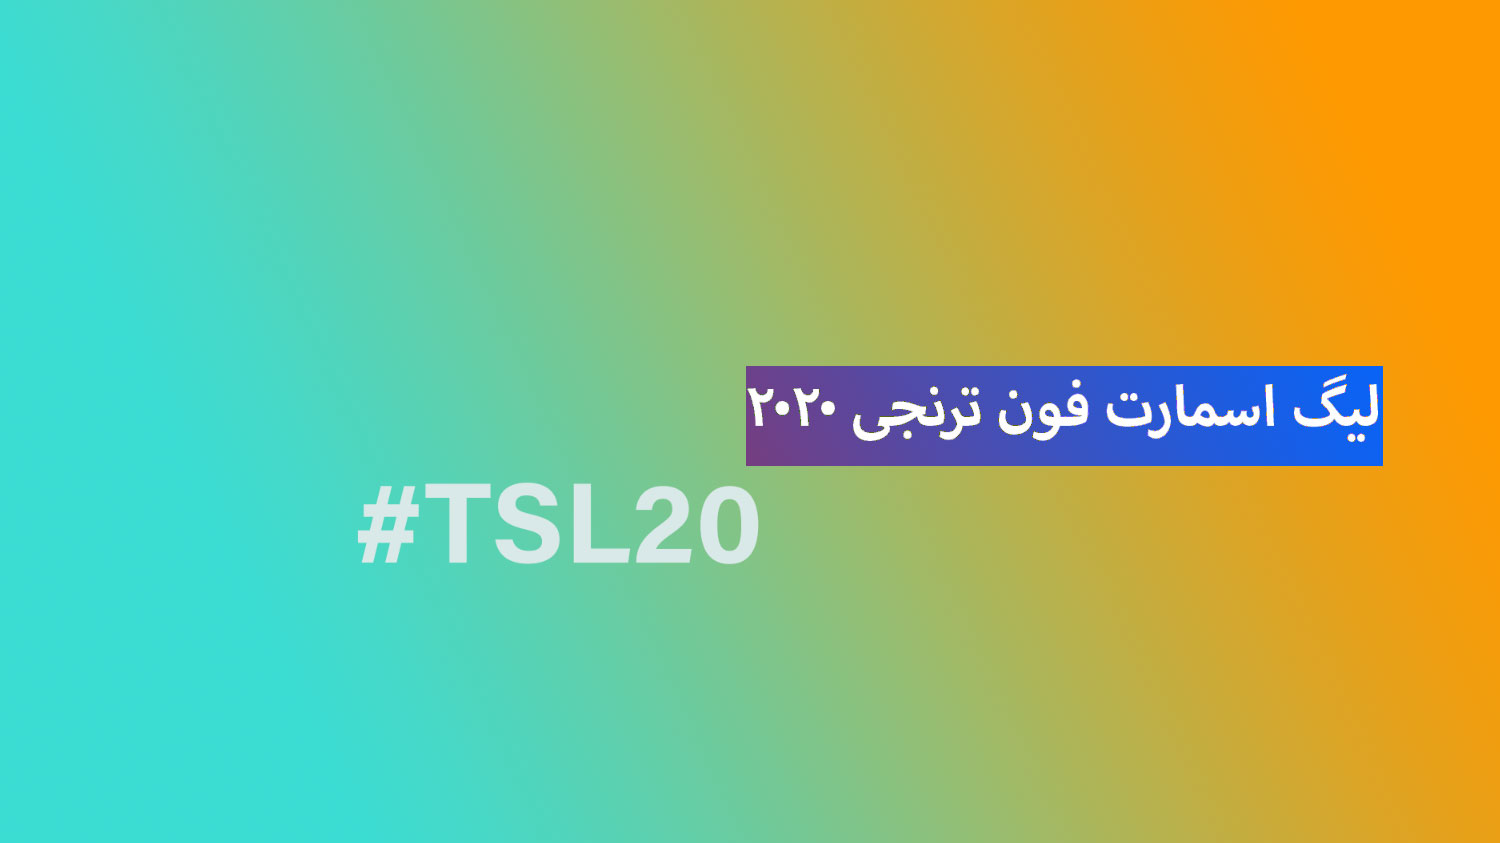 جمع بندی دور نیمه نهایی لیگ اسمارت فون ترنجی ۲۰۲۰ | TSL20